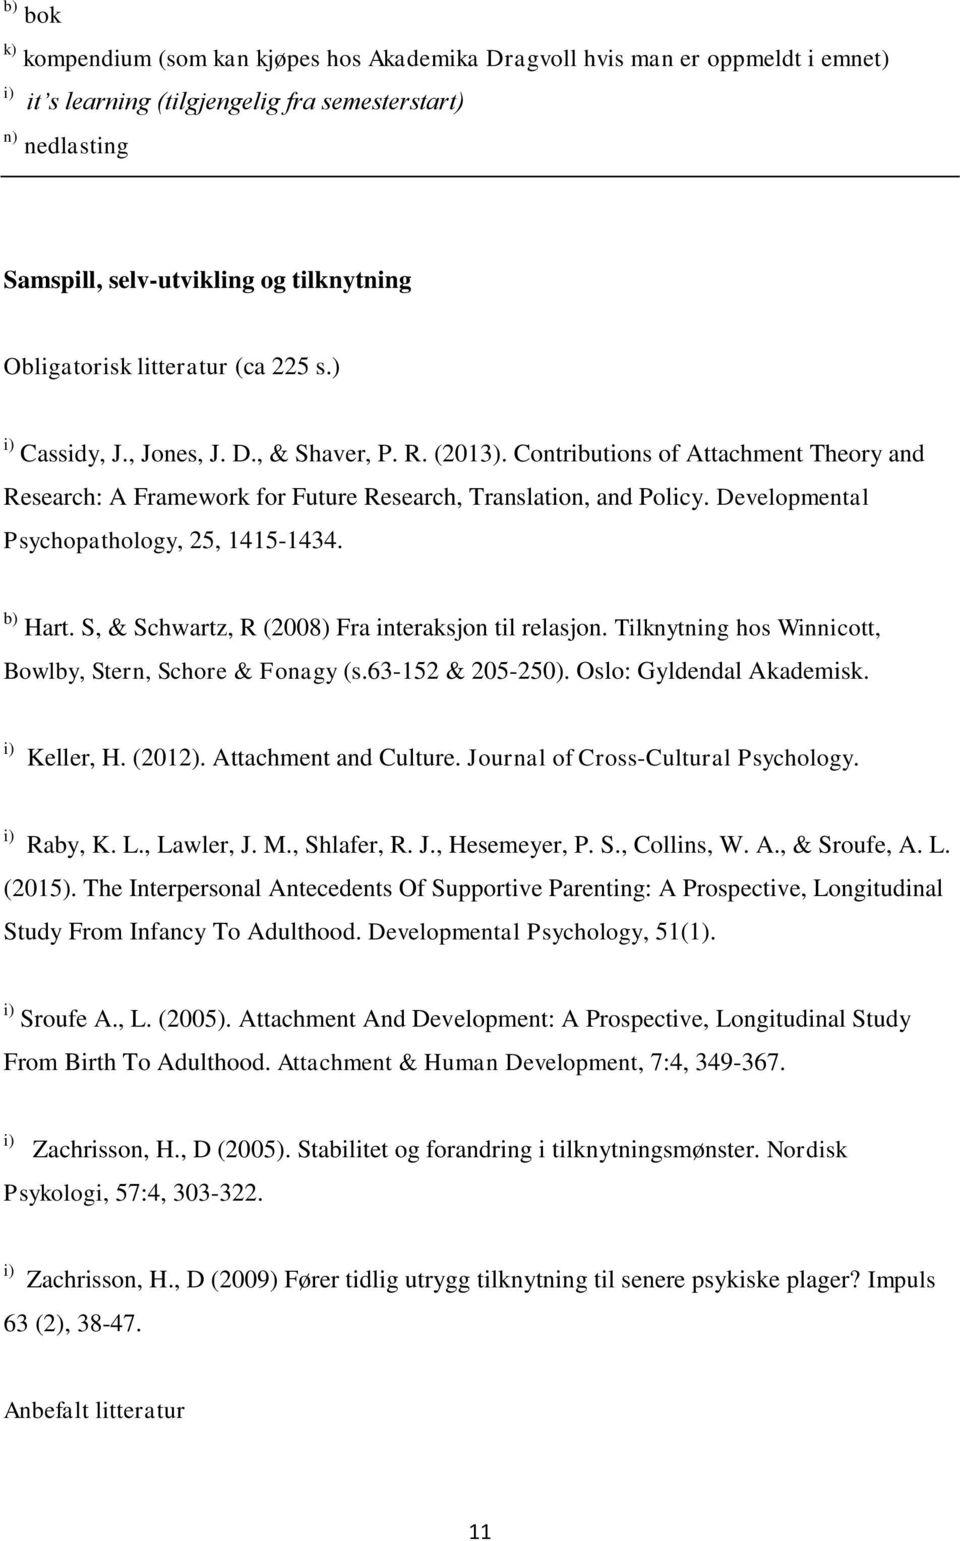 Developmental Psychopathology, 25, 1415-1434. b) Hart. S, & Schwartz, R (2008) Fra interaksjon til relasjon. Tilknytning hos Winnicott, Bowlby, Stern, Schore & Fonagy (s.63-152 & 205-250).